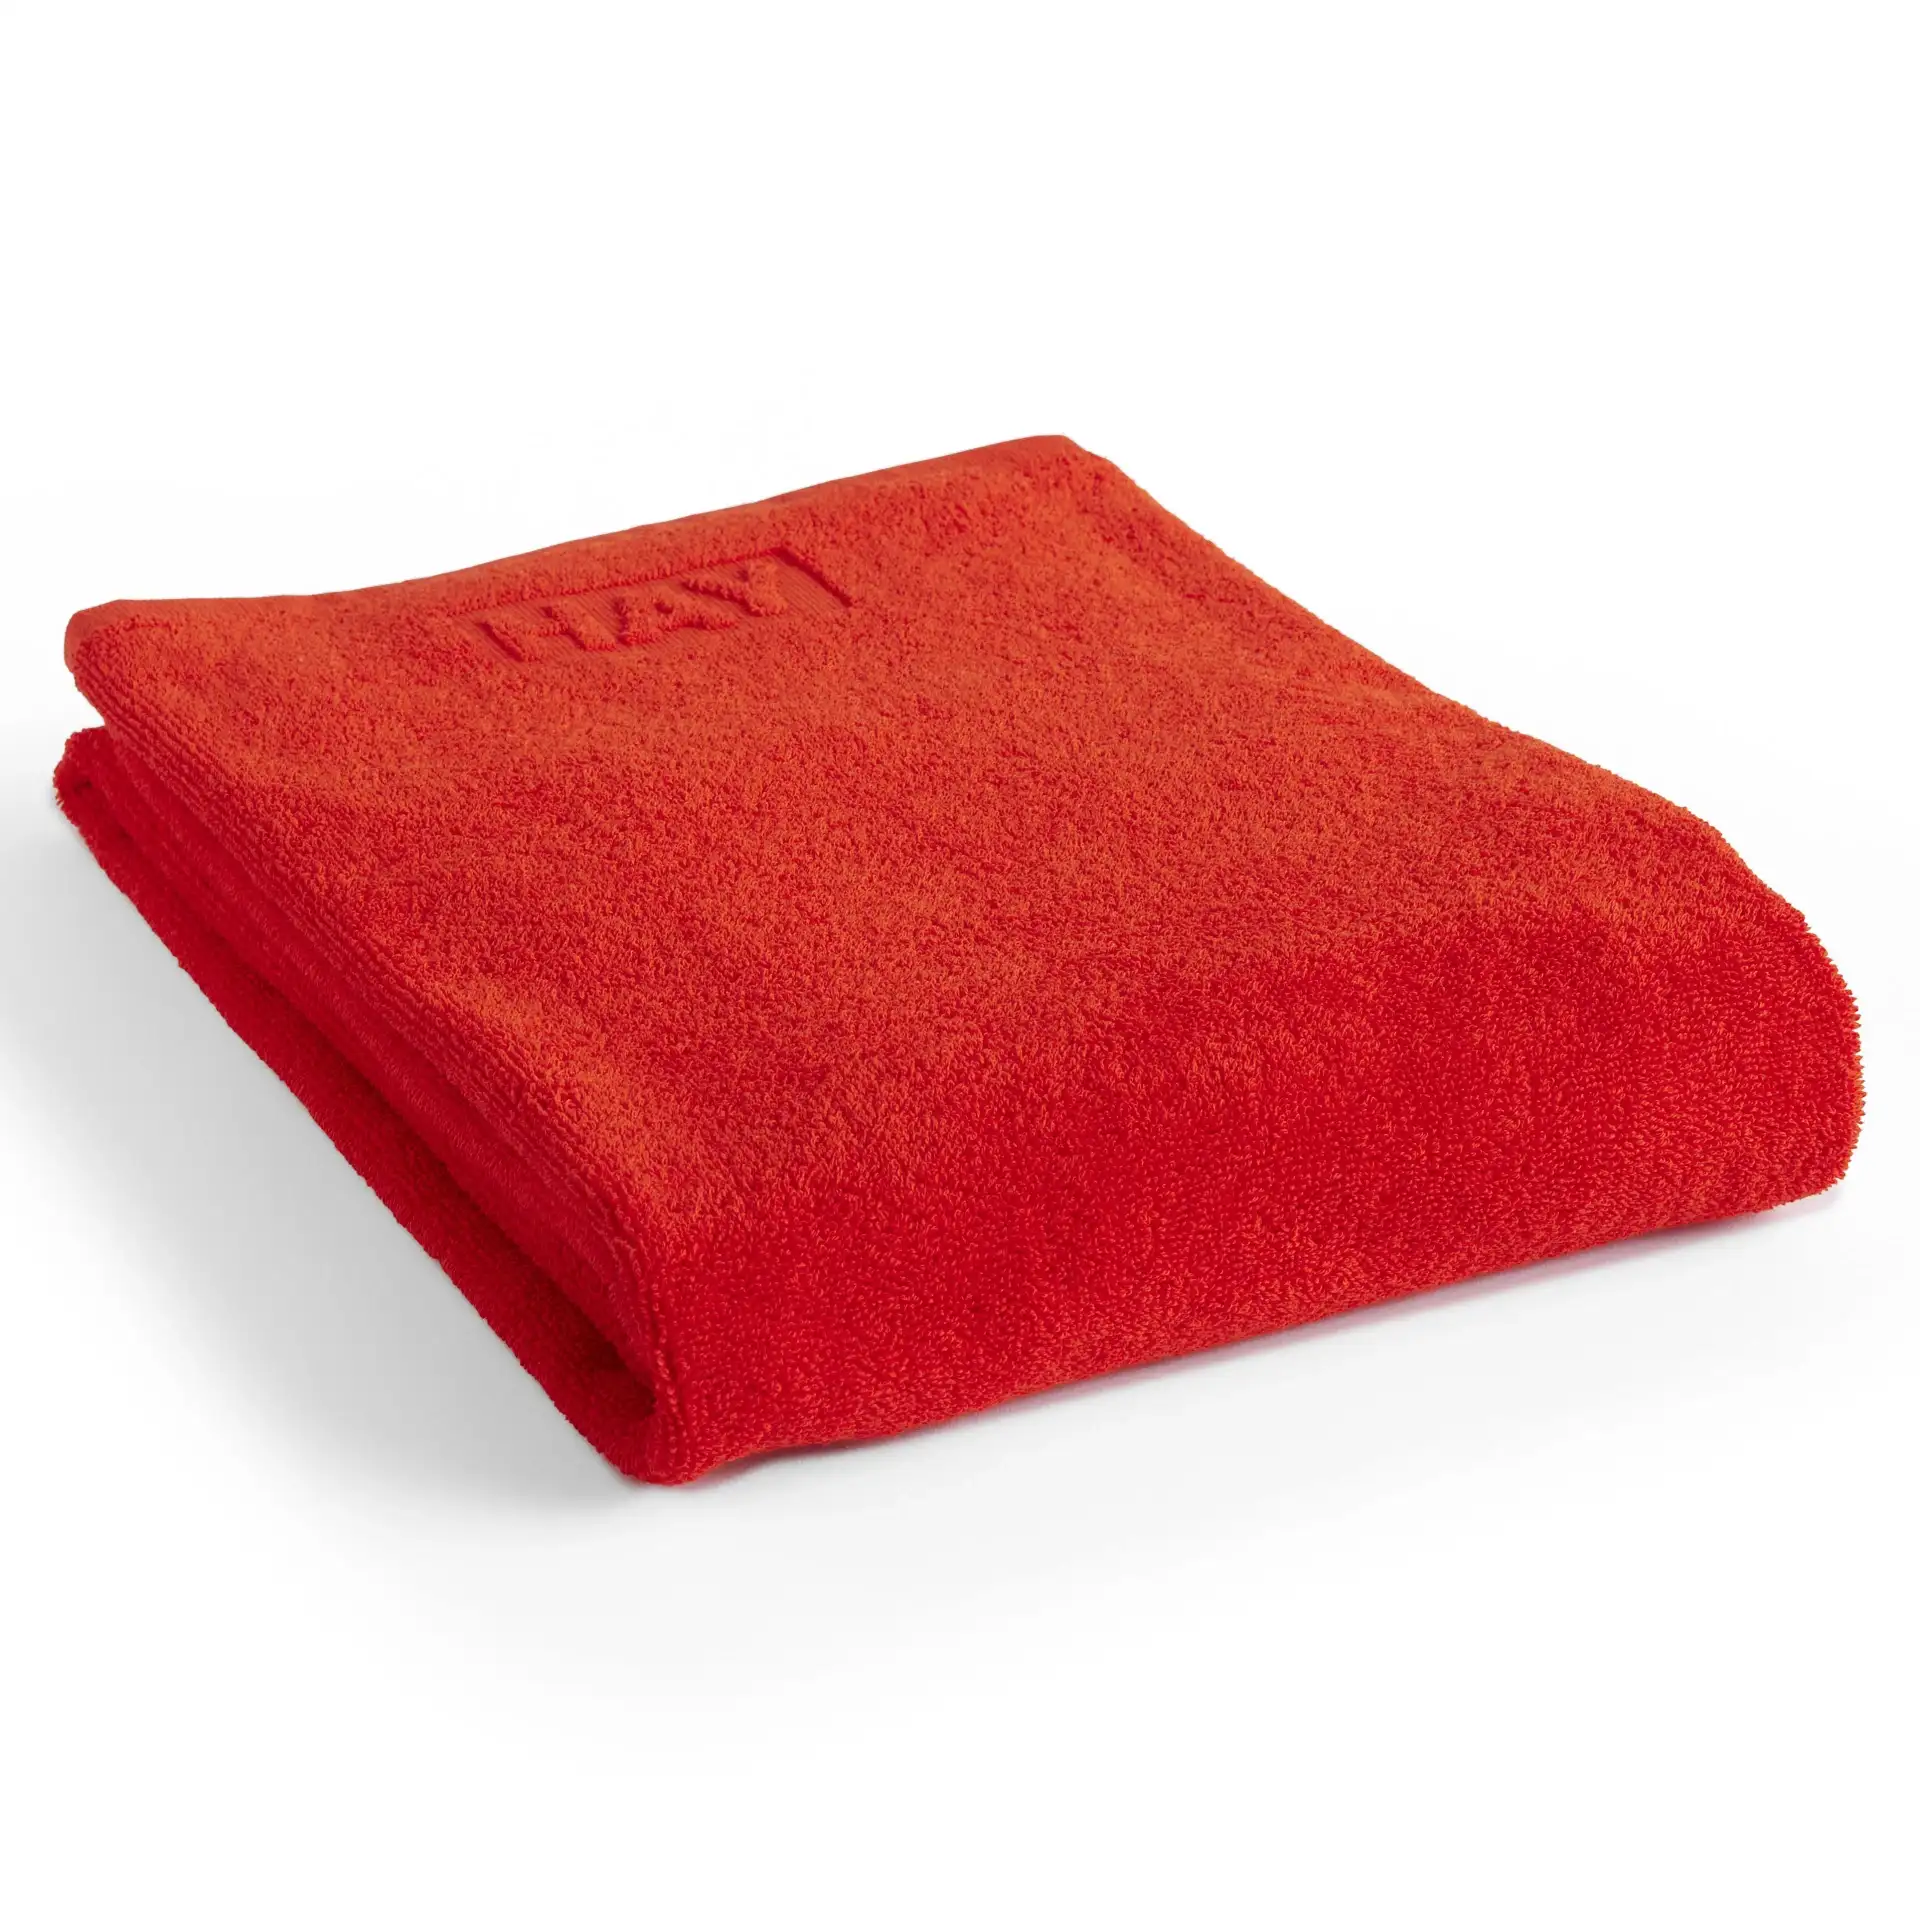 HAY 70 x 140cm Poppy Red Mono Bath Towel